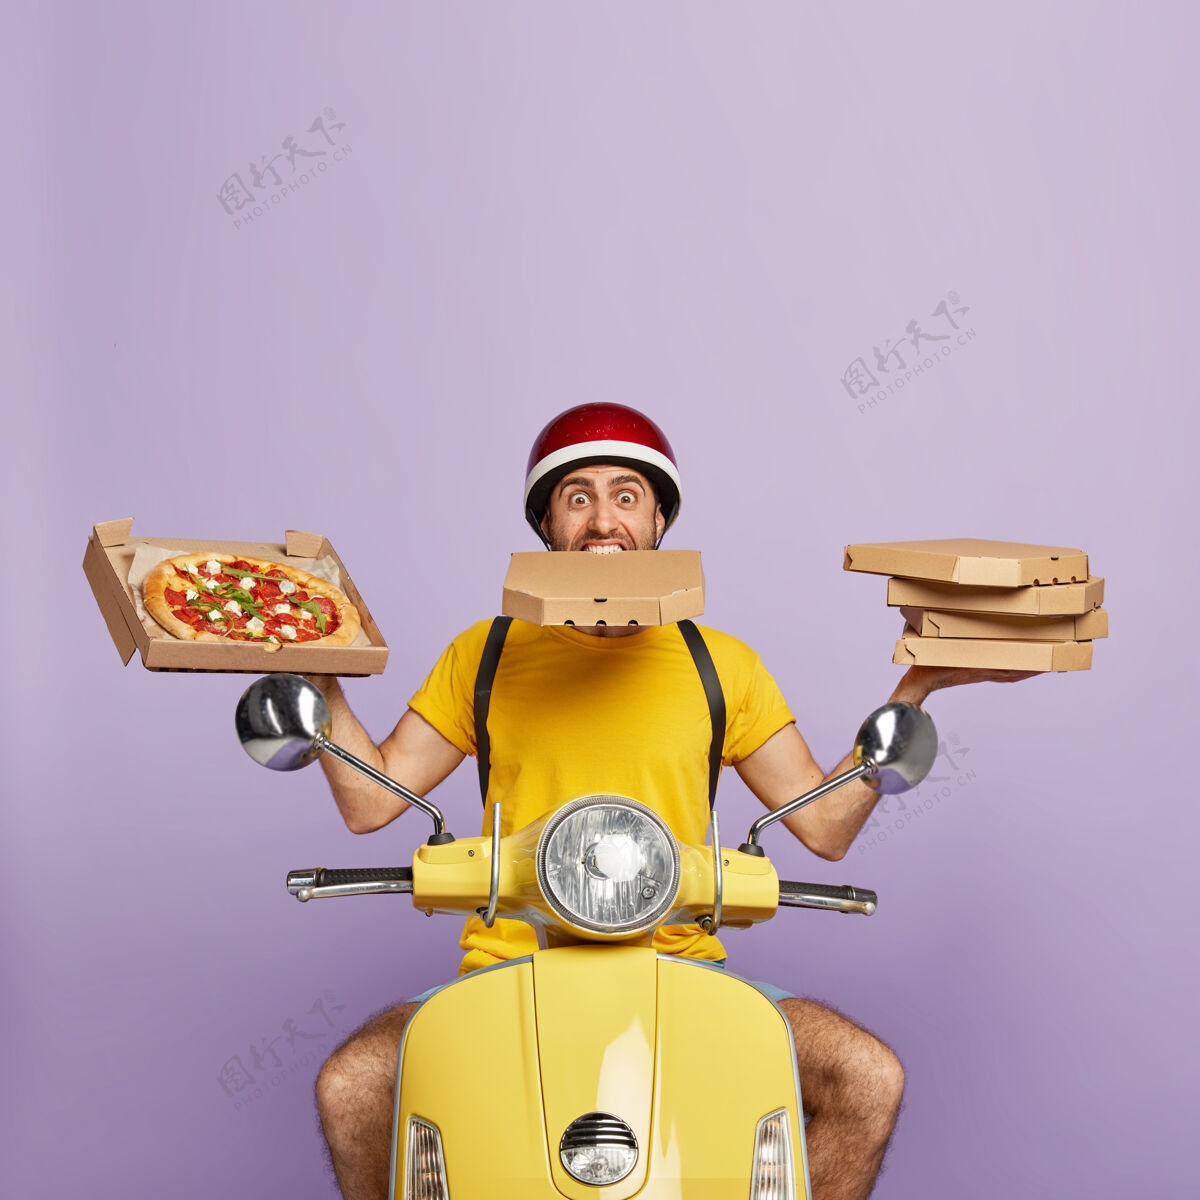 姿势忙送货员驾驶黄色踏板车 而持有比萨饼盒累了营养工人